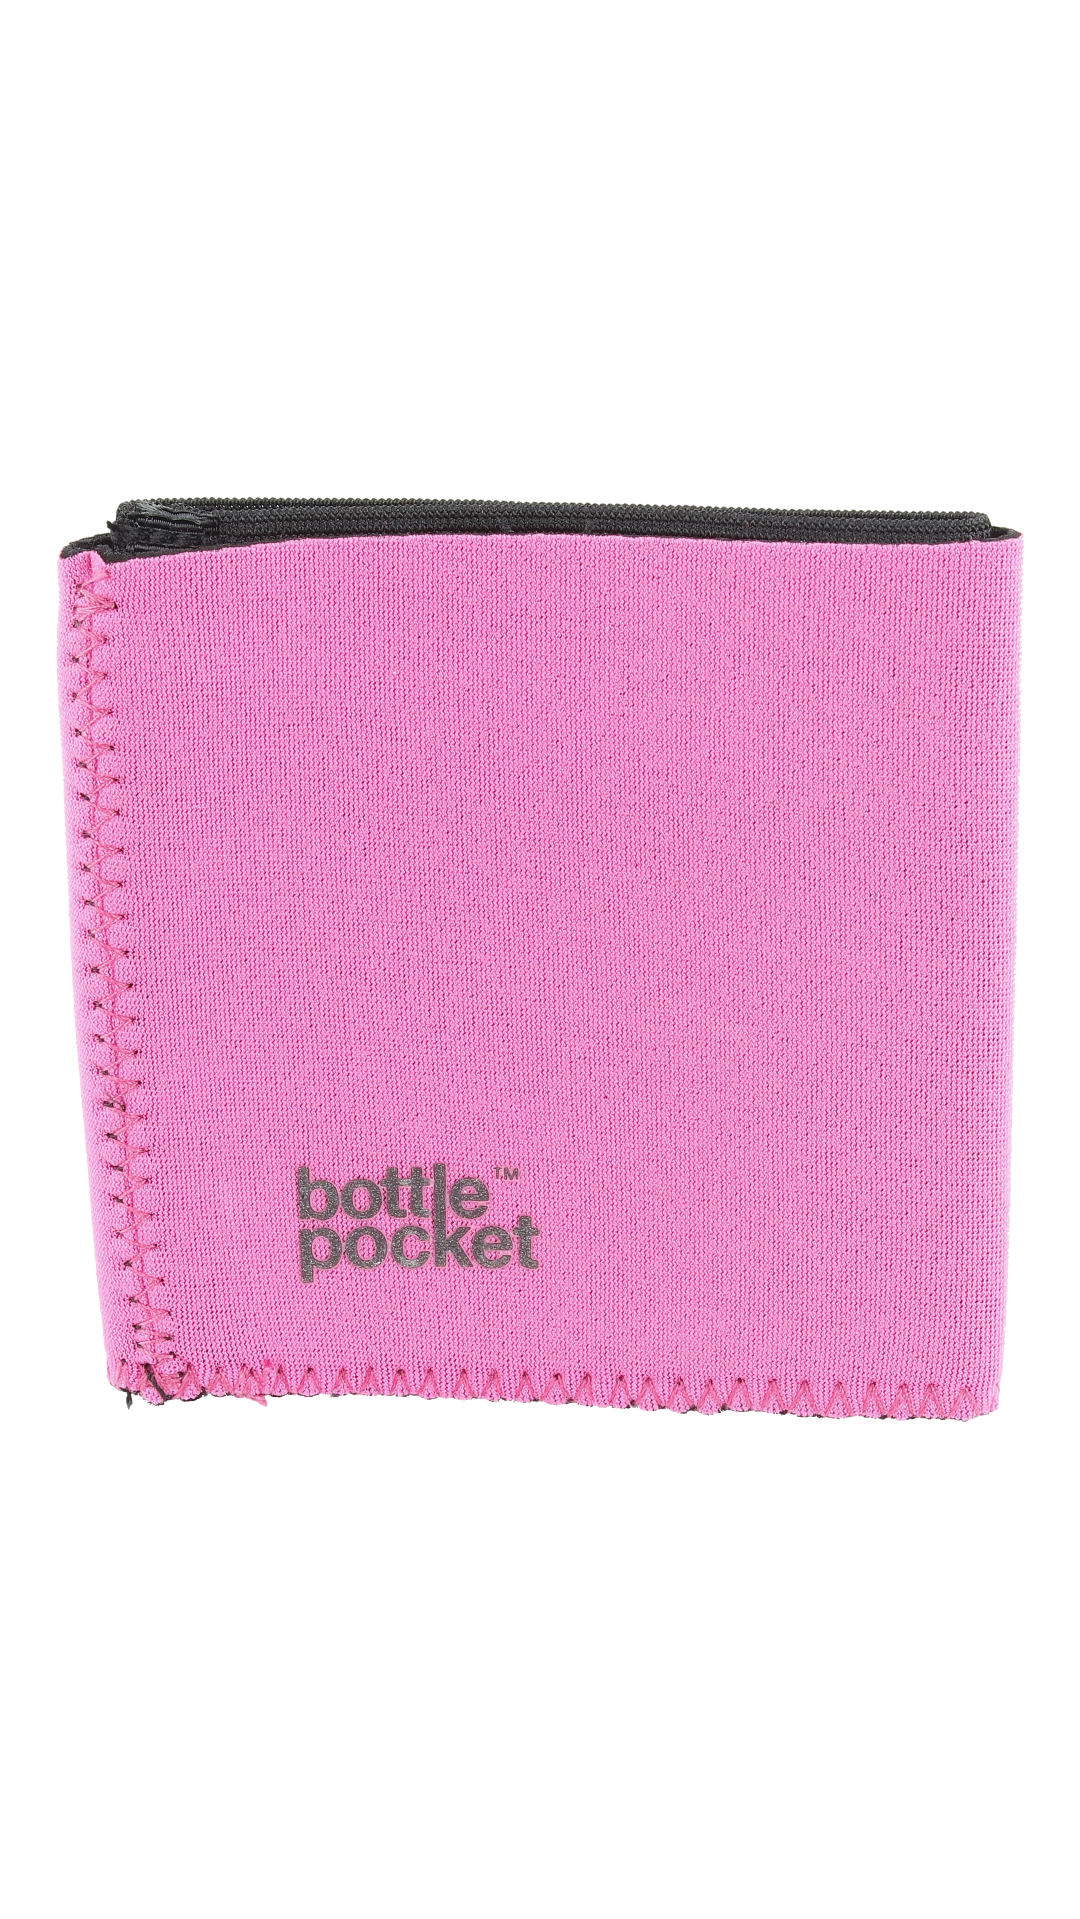 The Bottle Pocket